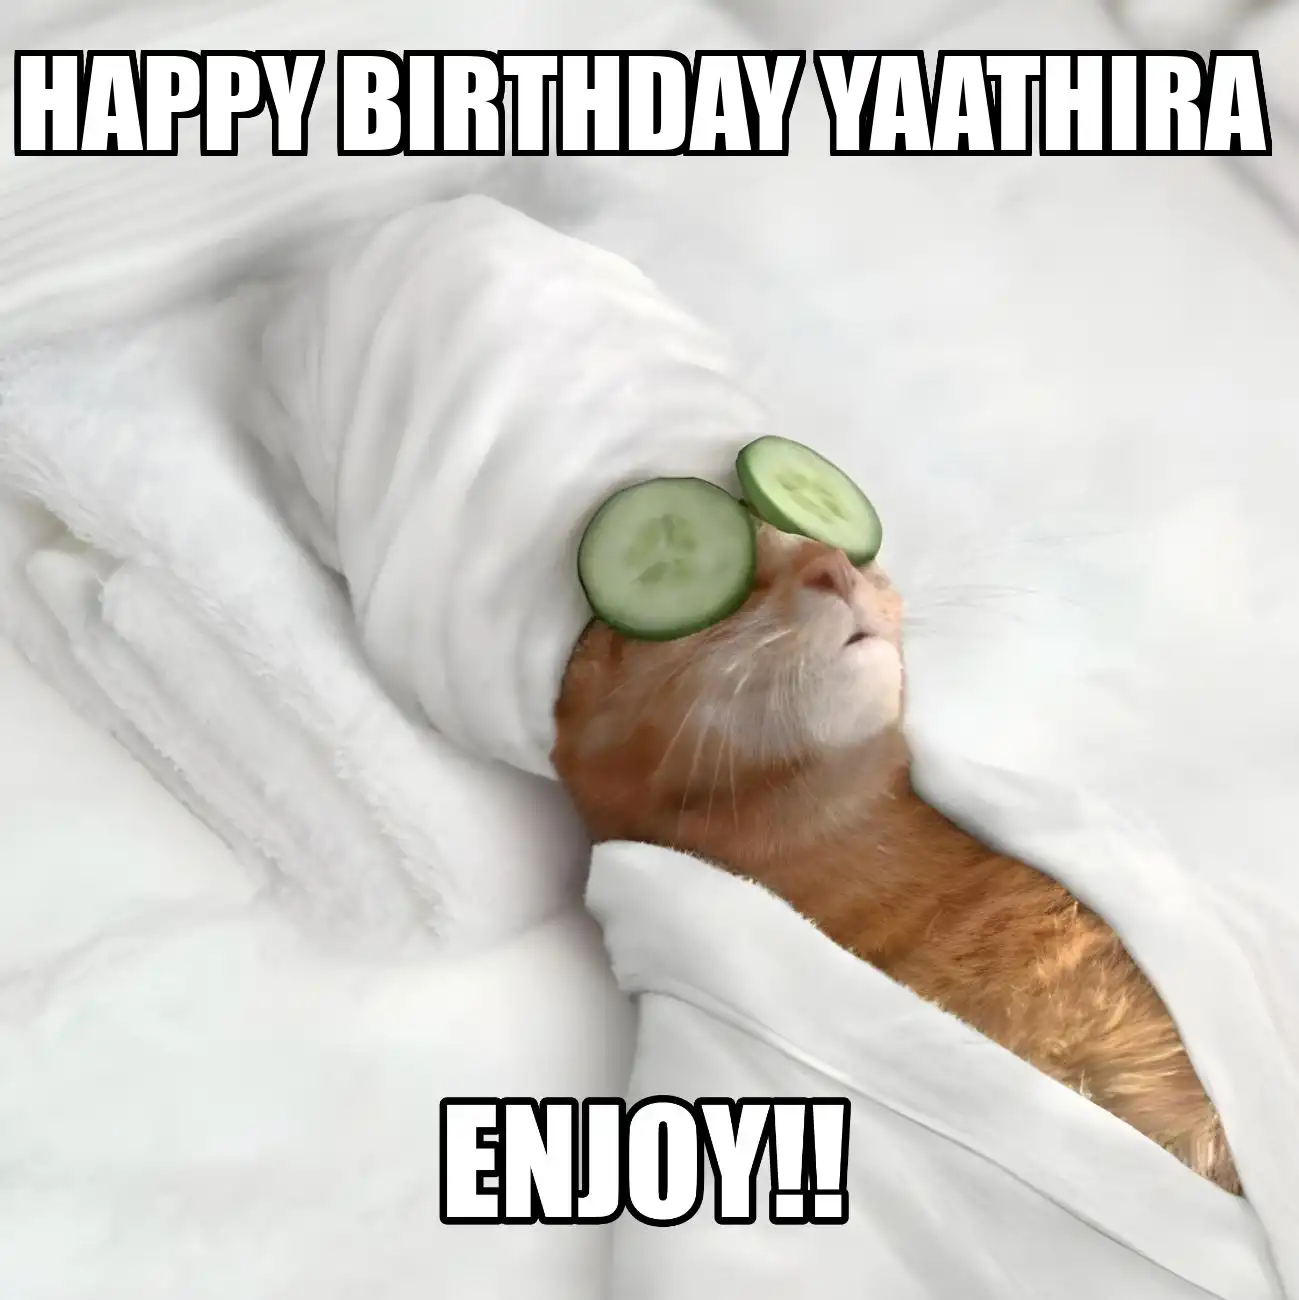 Happy Birthday Yaathira Enjoy Cat Meme